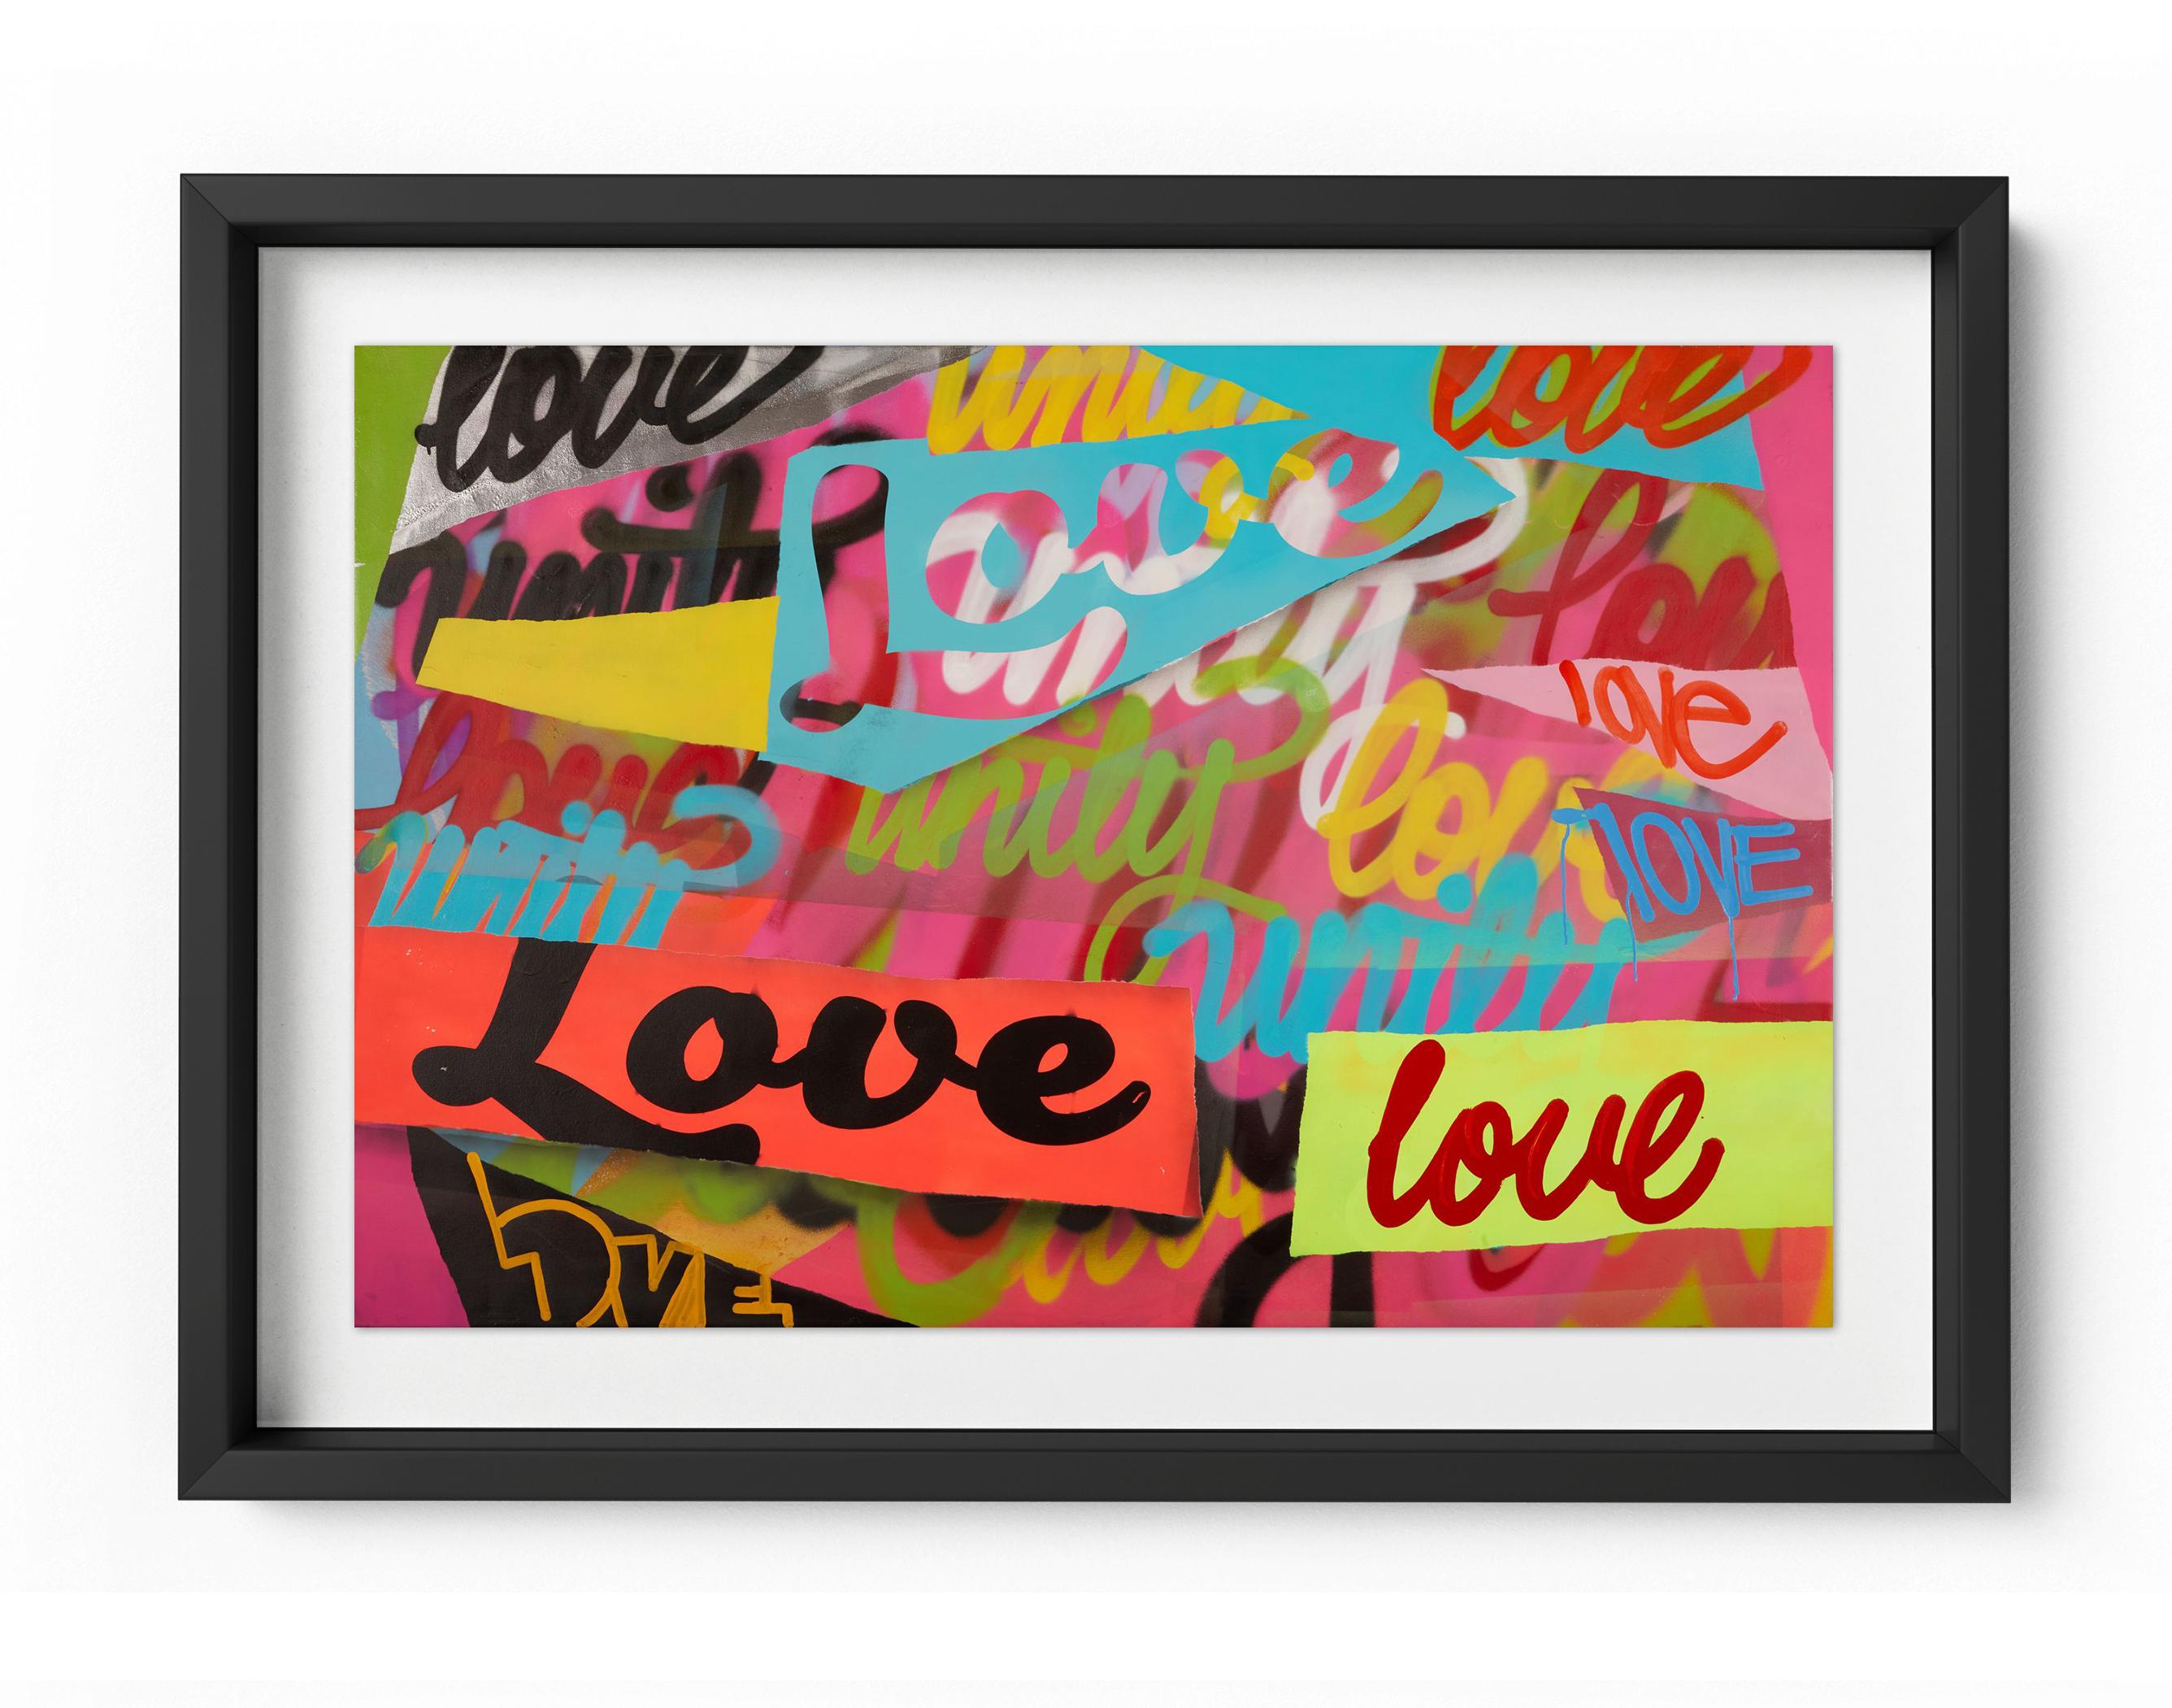 Abstract Print Karlos Marquez - Unité et amour - Impression encadrée en édition limitée - Contemporain - Inspiré des graffitis